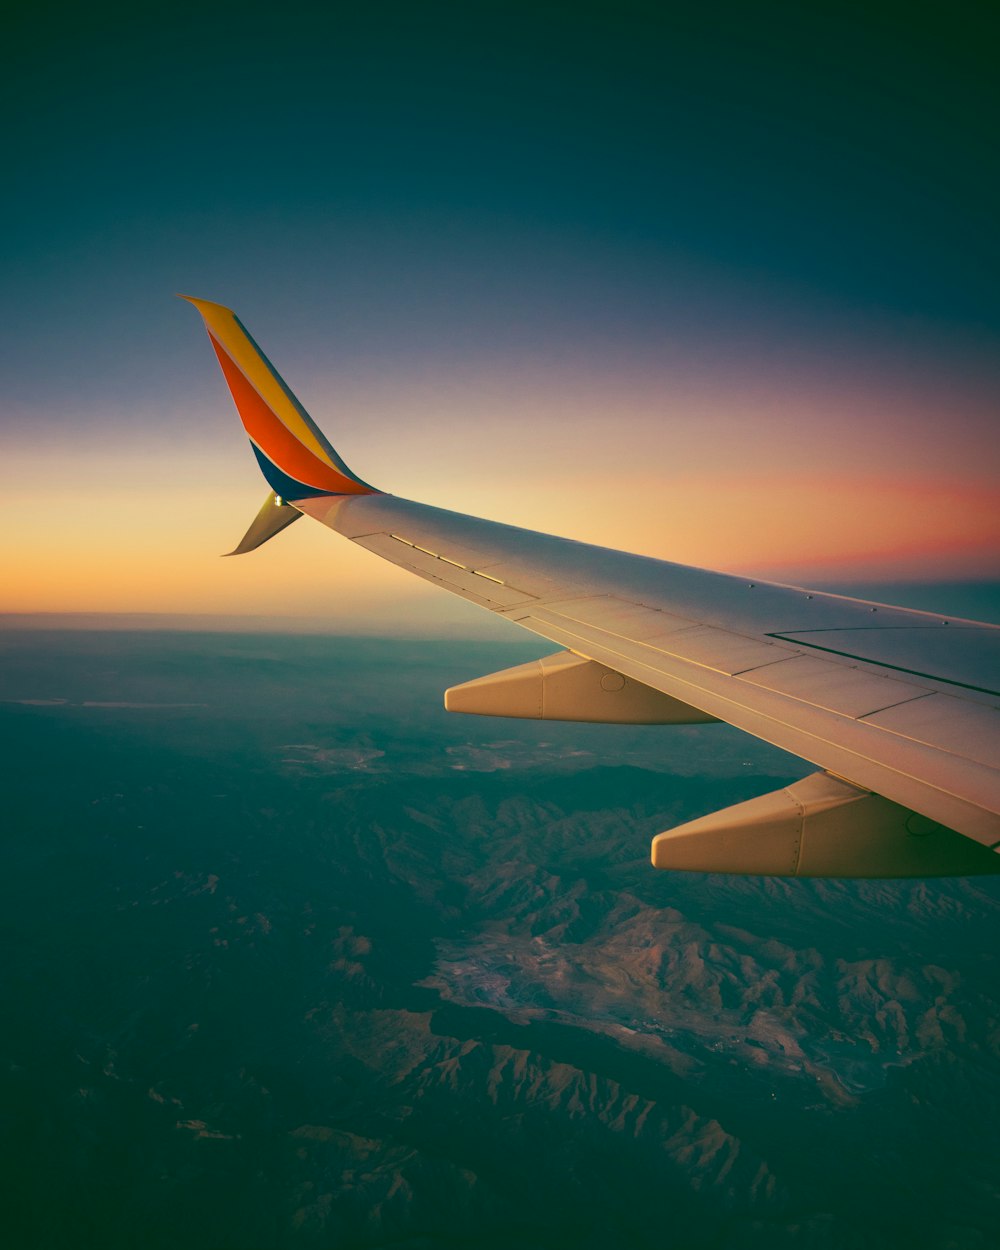 Une vue de l’aile d’un avion au coucher du soleil